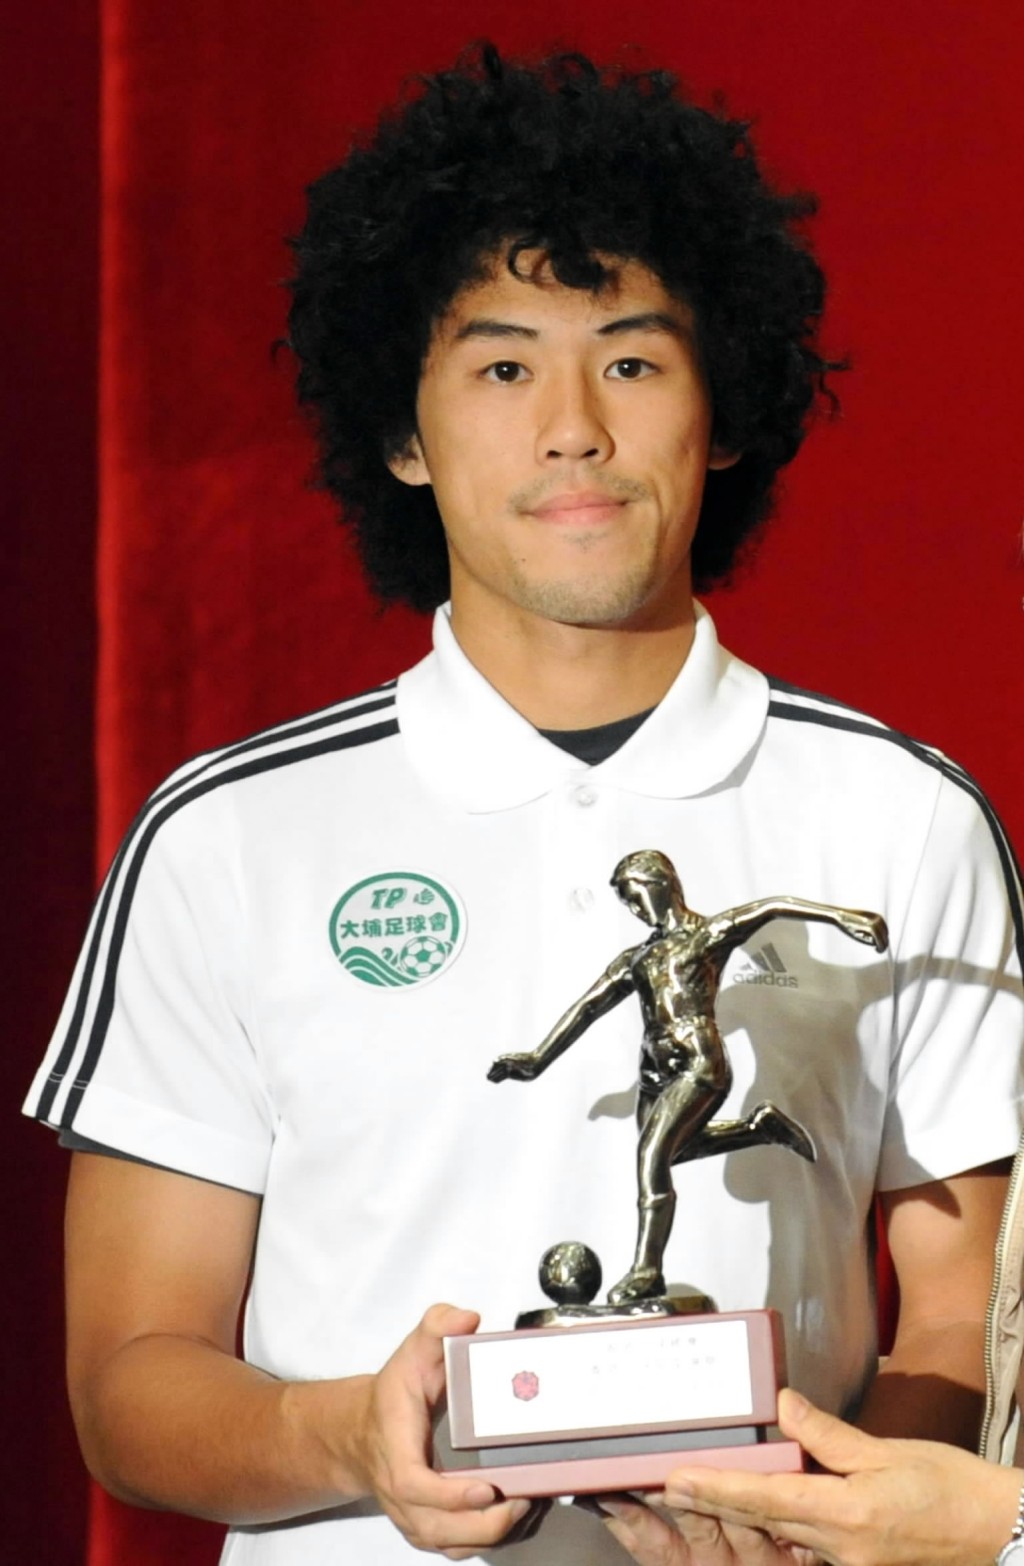 李瀚灏曾经赢过最佳青年球员奖。 资料图片